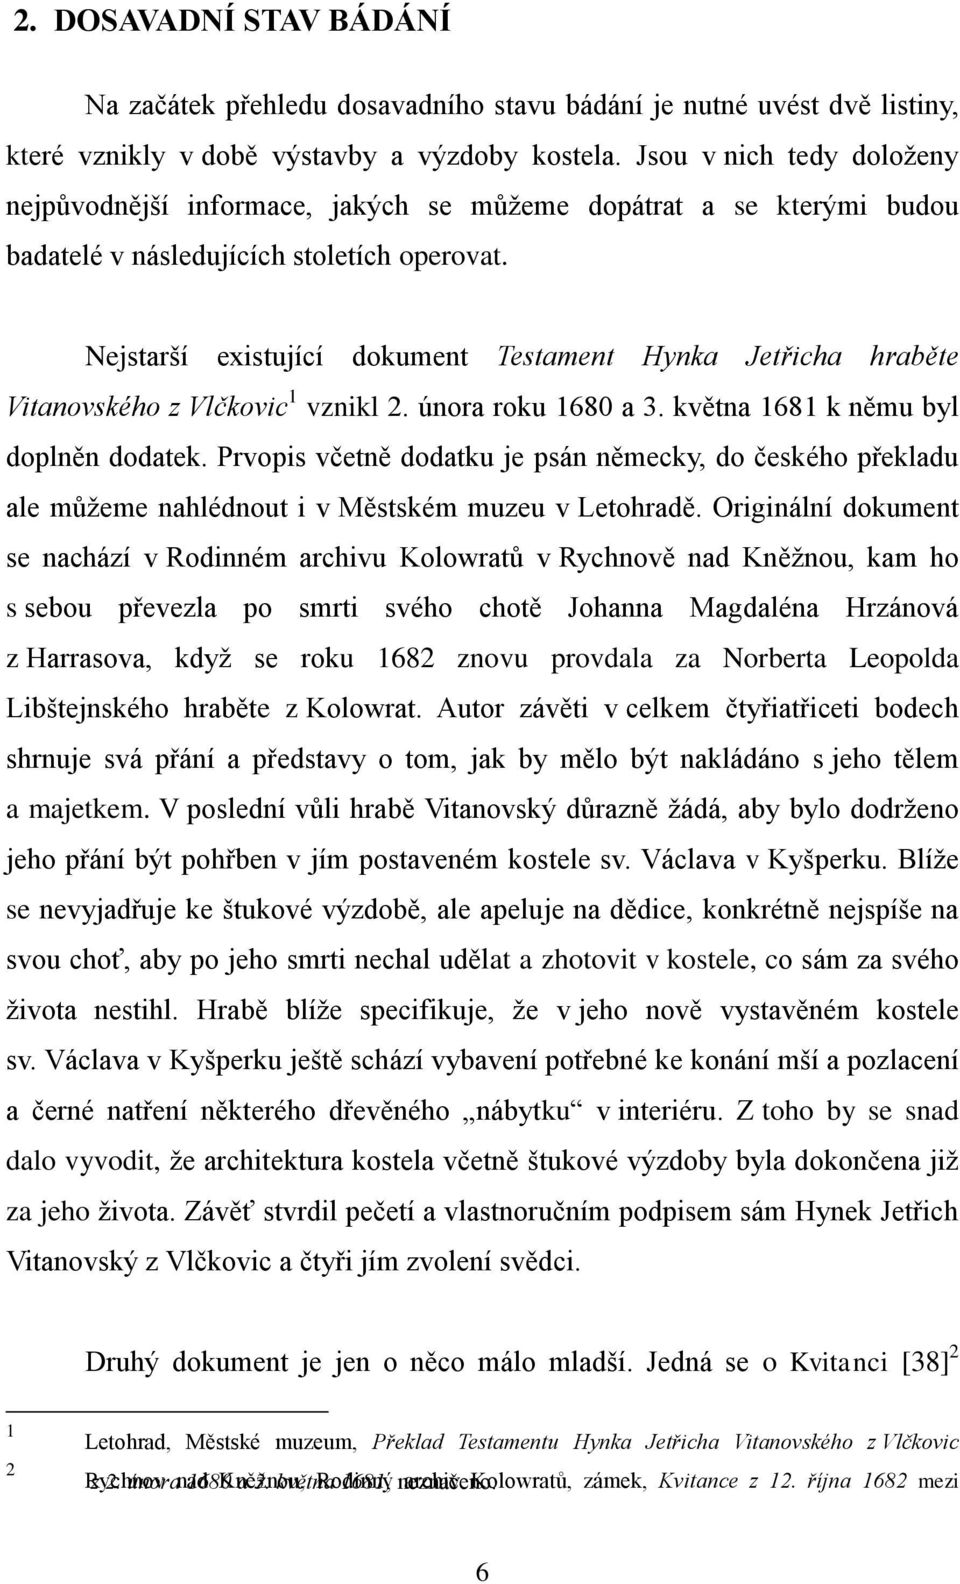 Nejstarší existující dokument Testament Hynka Jetřicha hraběte Vitanovského z Vlčkovic 1 vznikl 2. února roku 1680 a 3. května 1681 k němu byl doplněn dodatek.